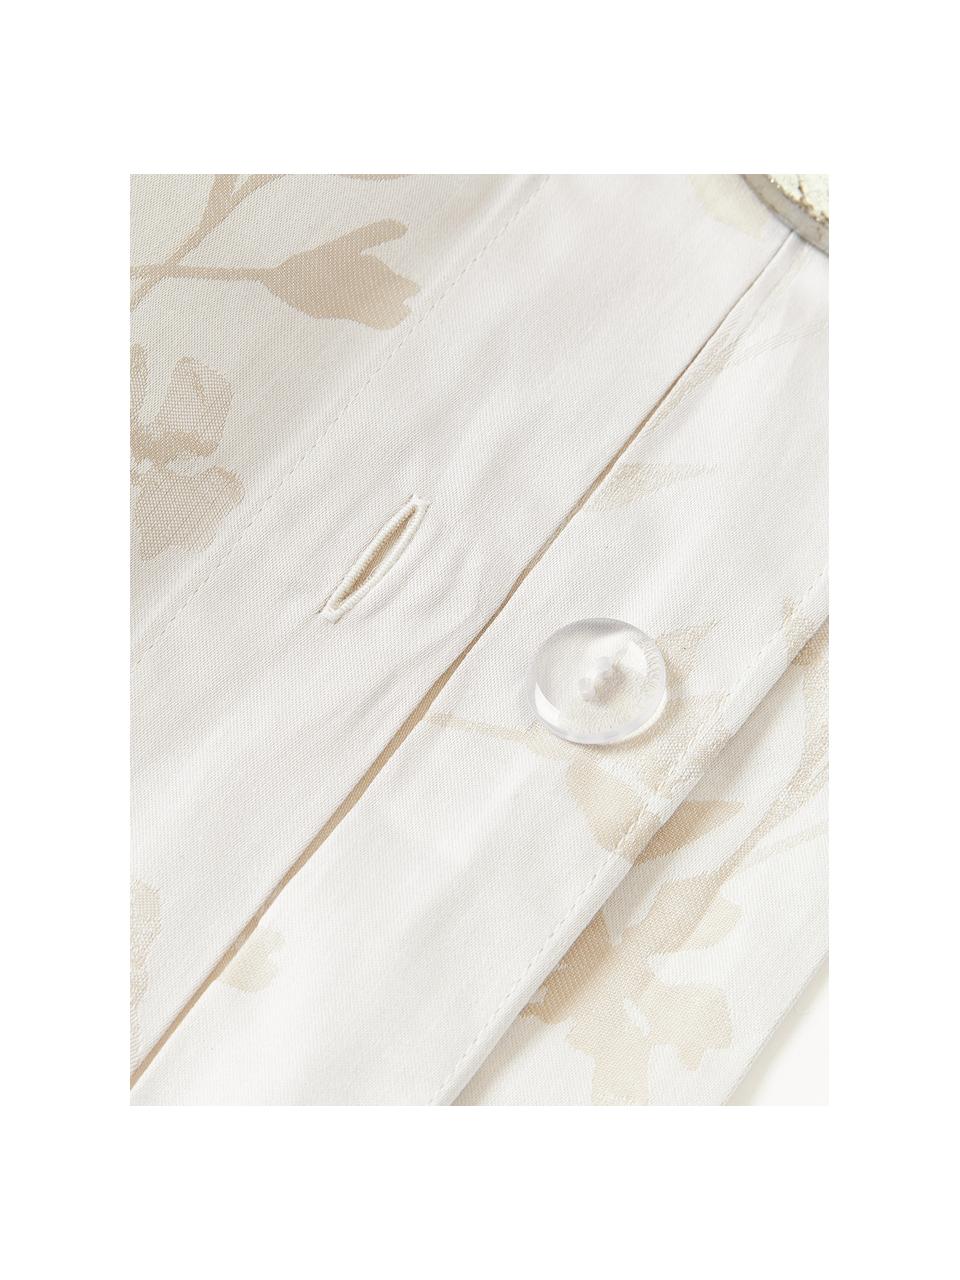 Housse de couette en satin de coton avec imprimé floral et ourlet Hurley, Blanc crème, beige clair, larg. 200 x long. 200 cm